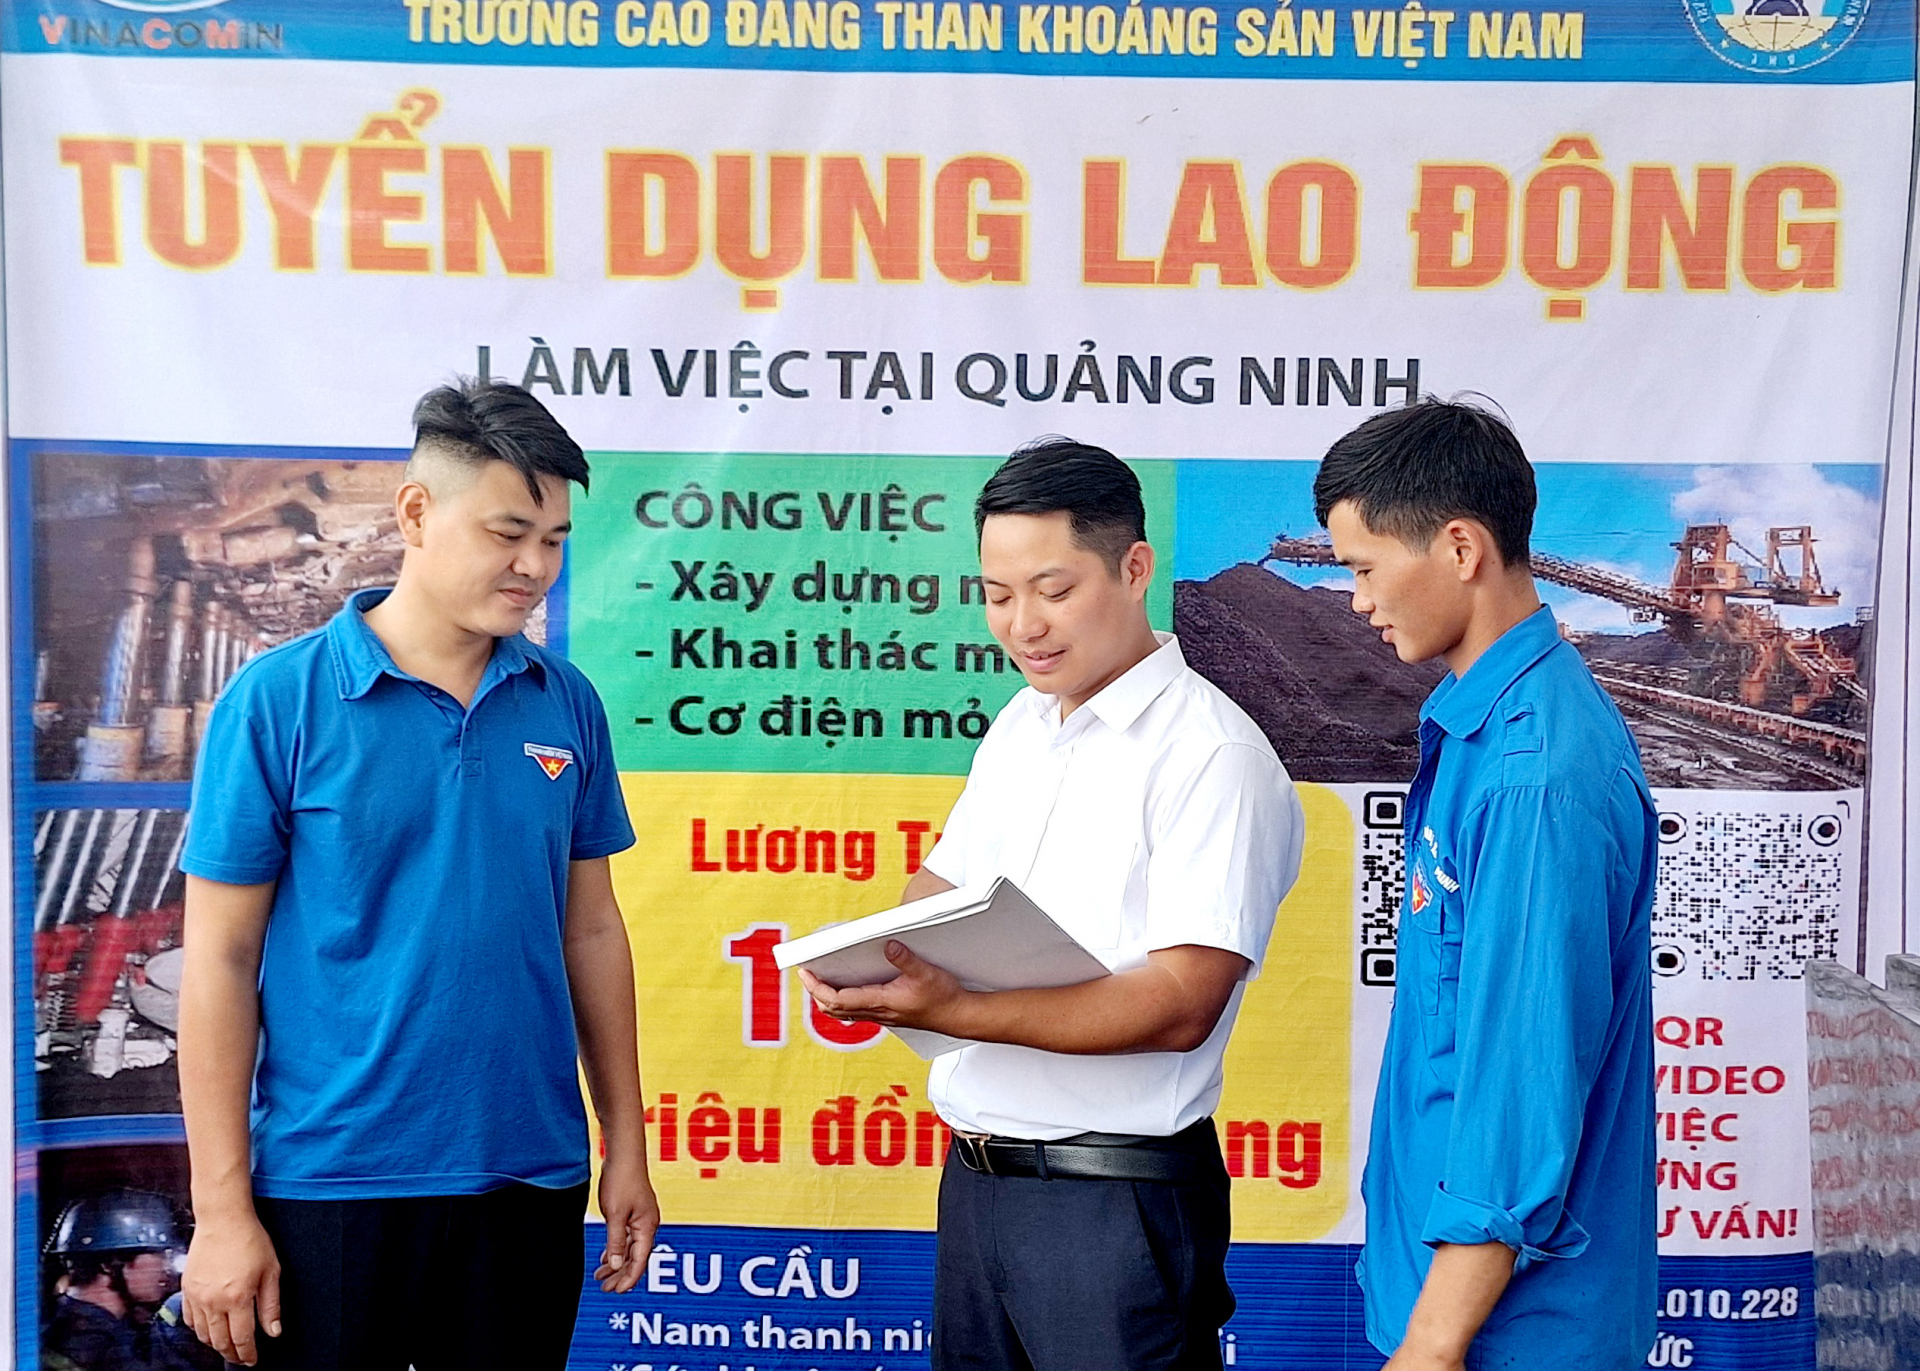 Cán bộ tuyển sinh Trường Cao đẳng Than khoáng sản Việt Nam giới thiệu việc làm cho thanh niên tham gia hội chợ